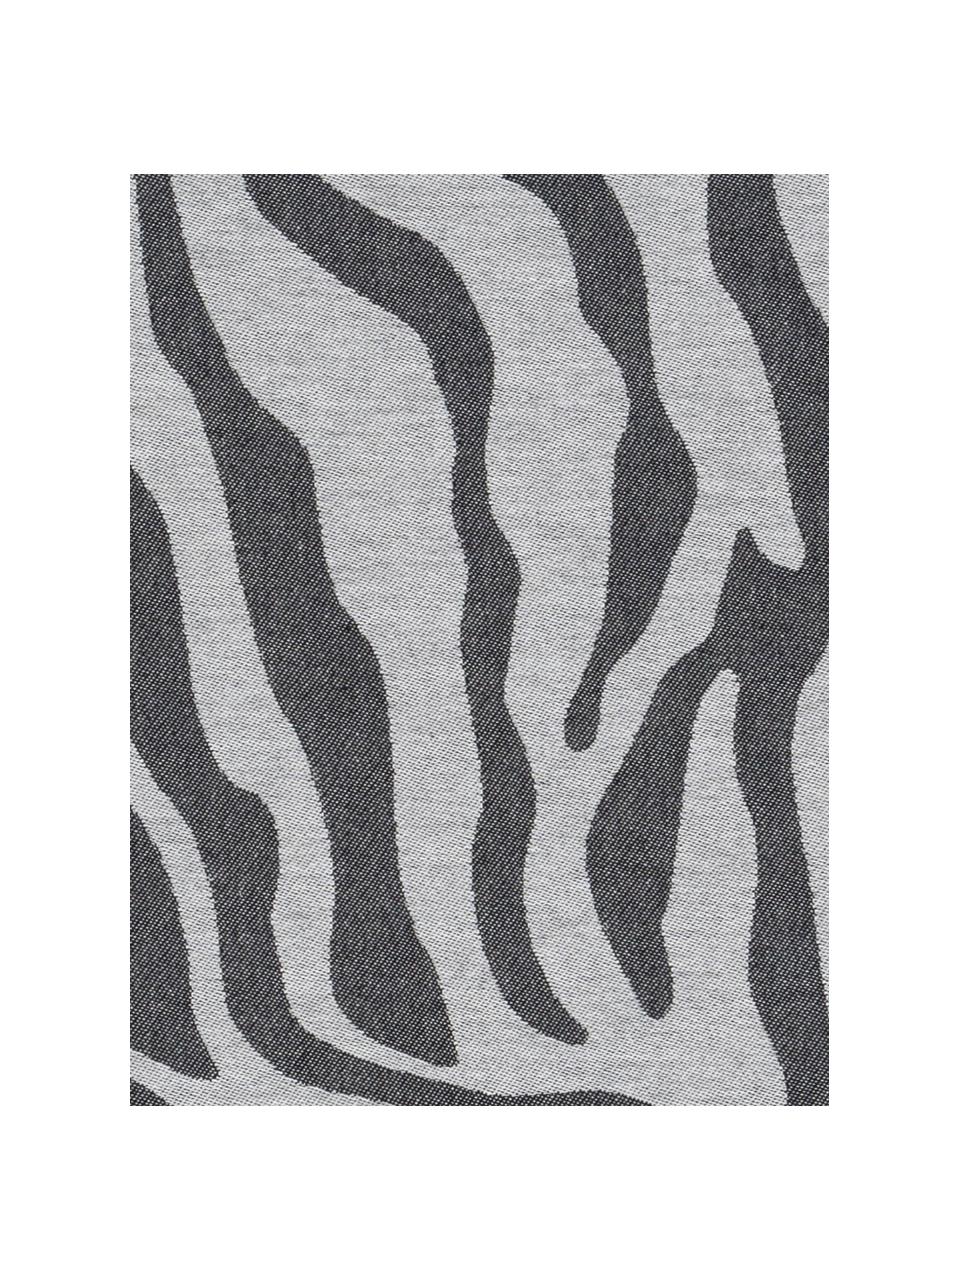 Baumwoll-Geschirrtücher Africa mit Zebramuster, 6 Stück, Baumwolle, Schwarz, Weiß, B 60 x L 65 cm